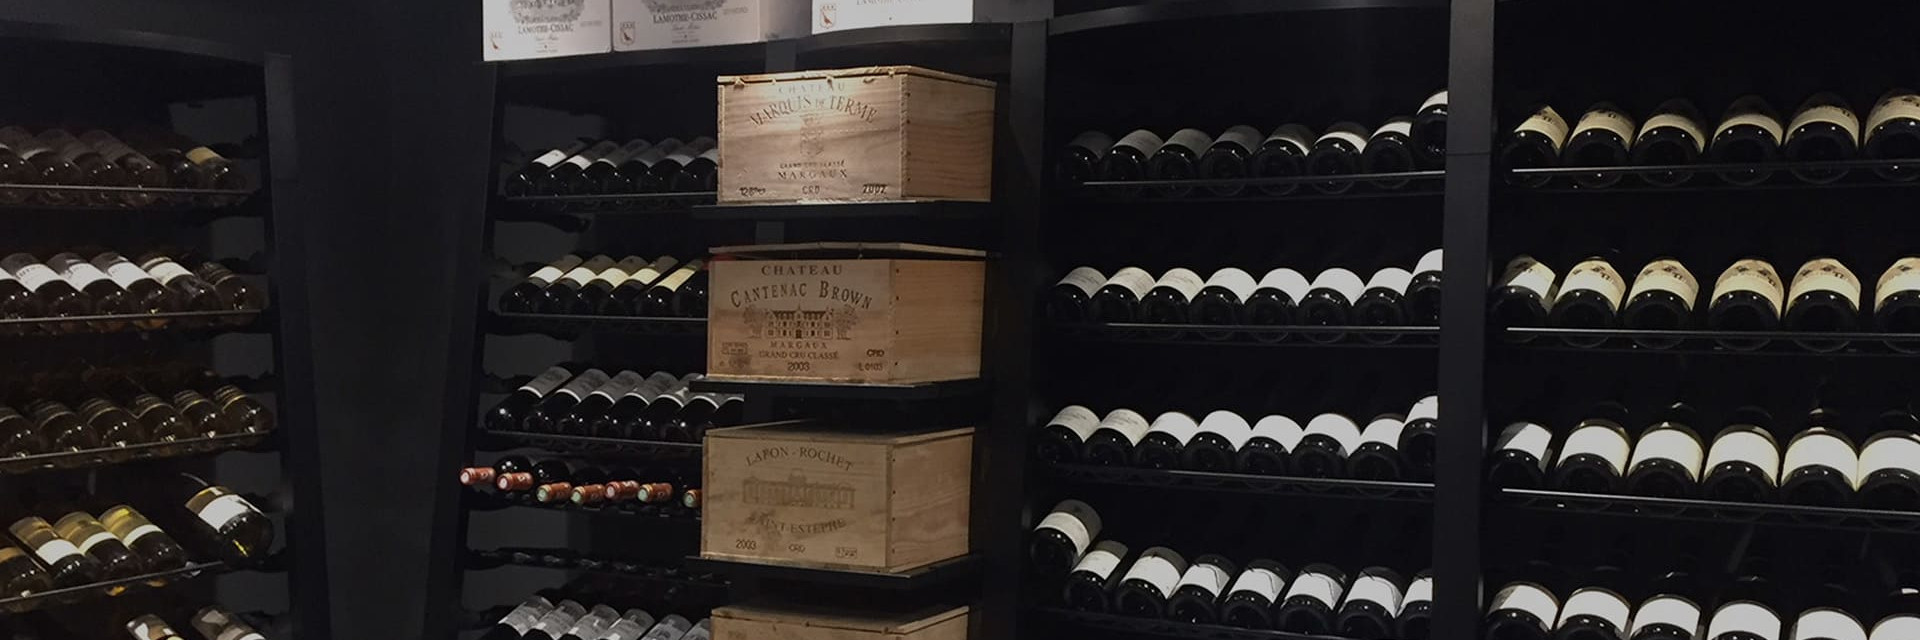 Casiers à vin en acier noir pour ranger le vin - Grand volume de vin à stocker - Nombreuses options de rangement et de présentation des bouteilles. modulosteel eurocave